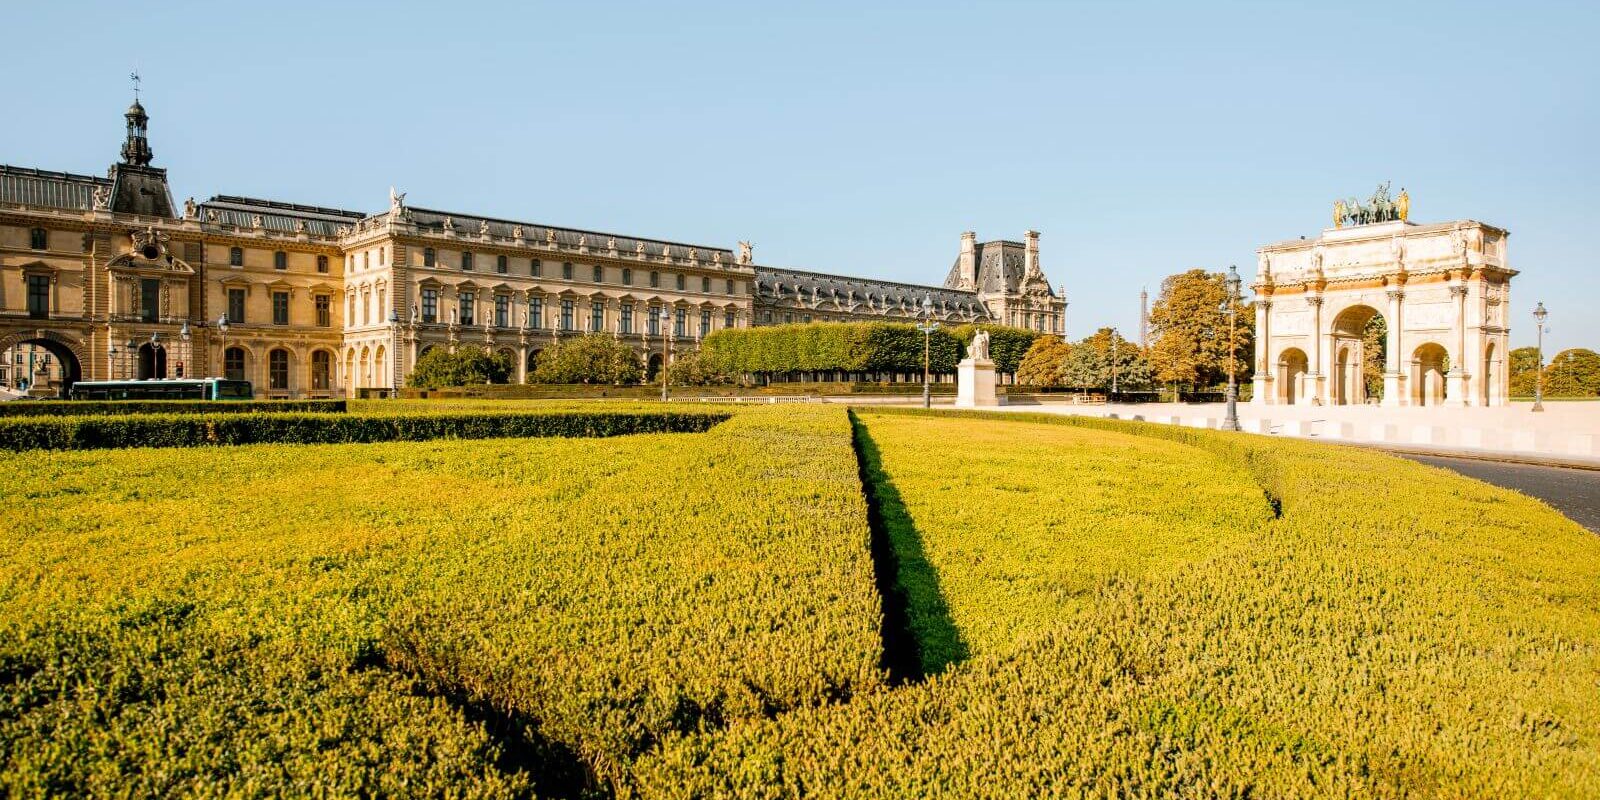 tuileries garden